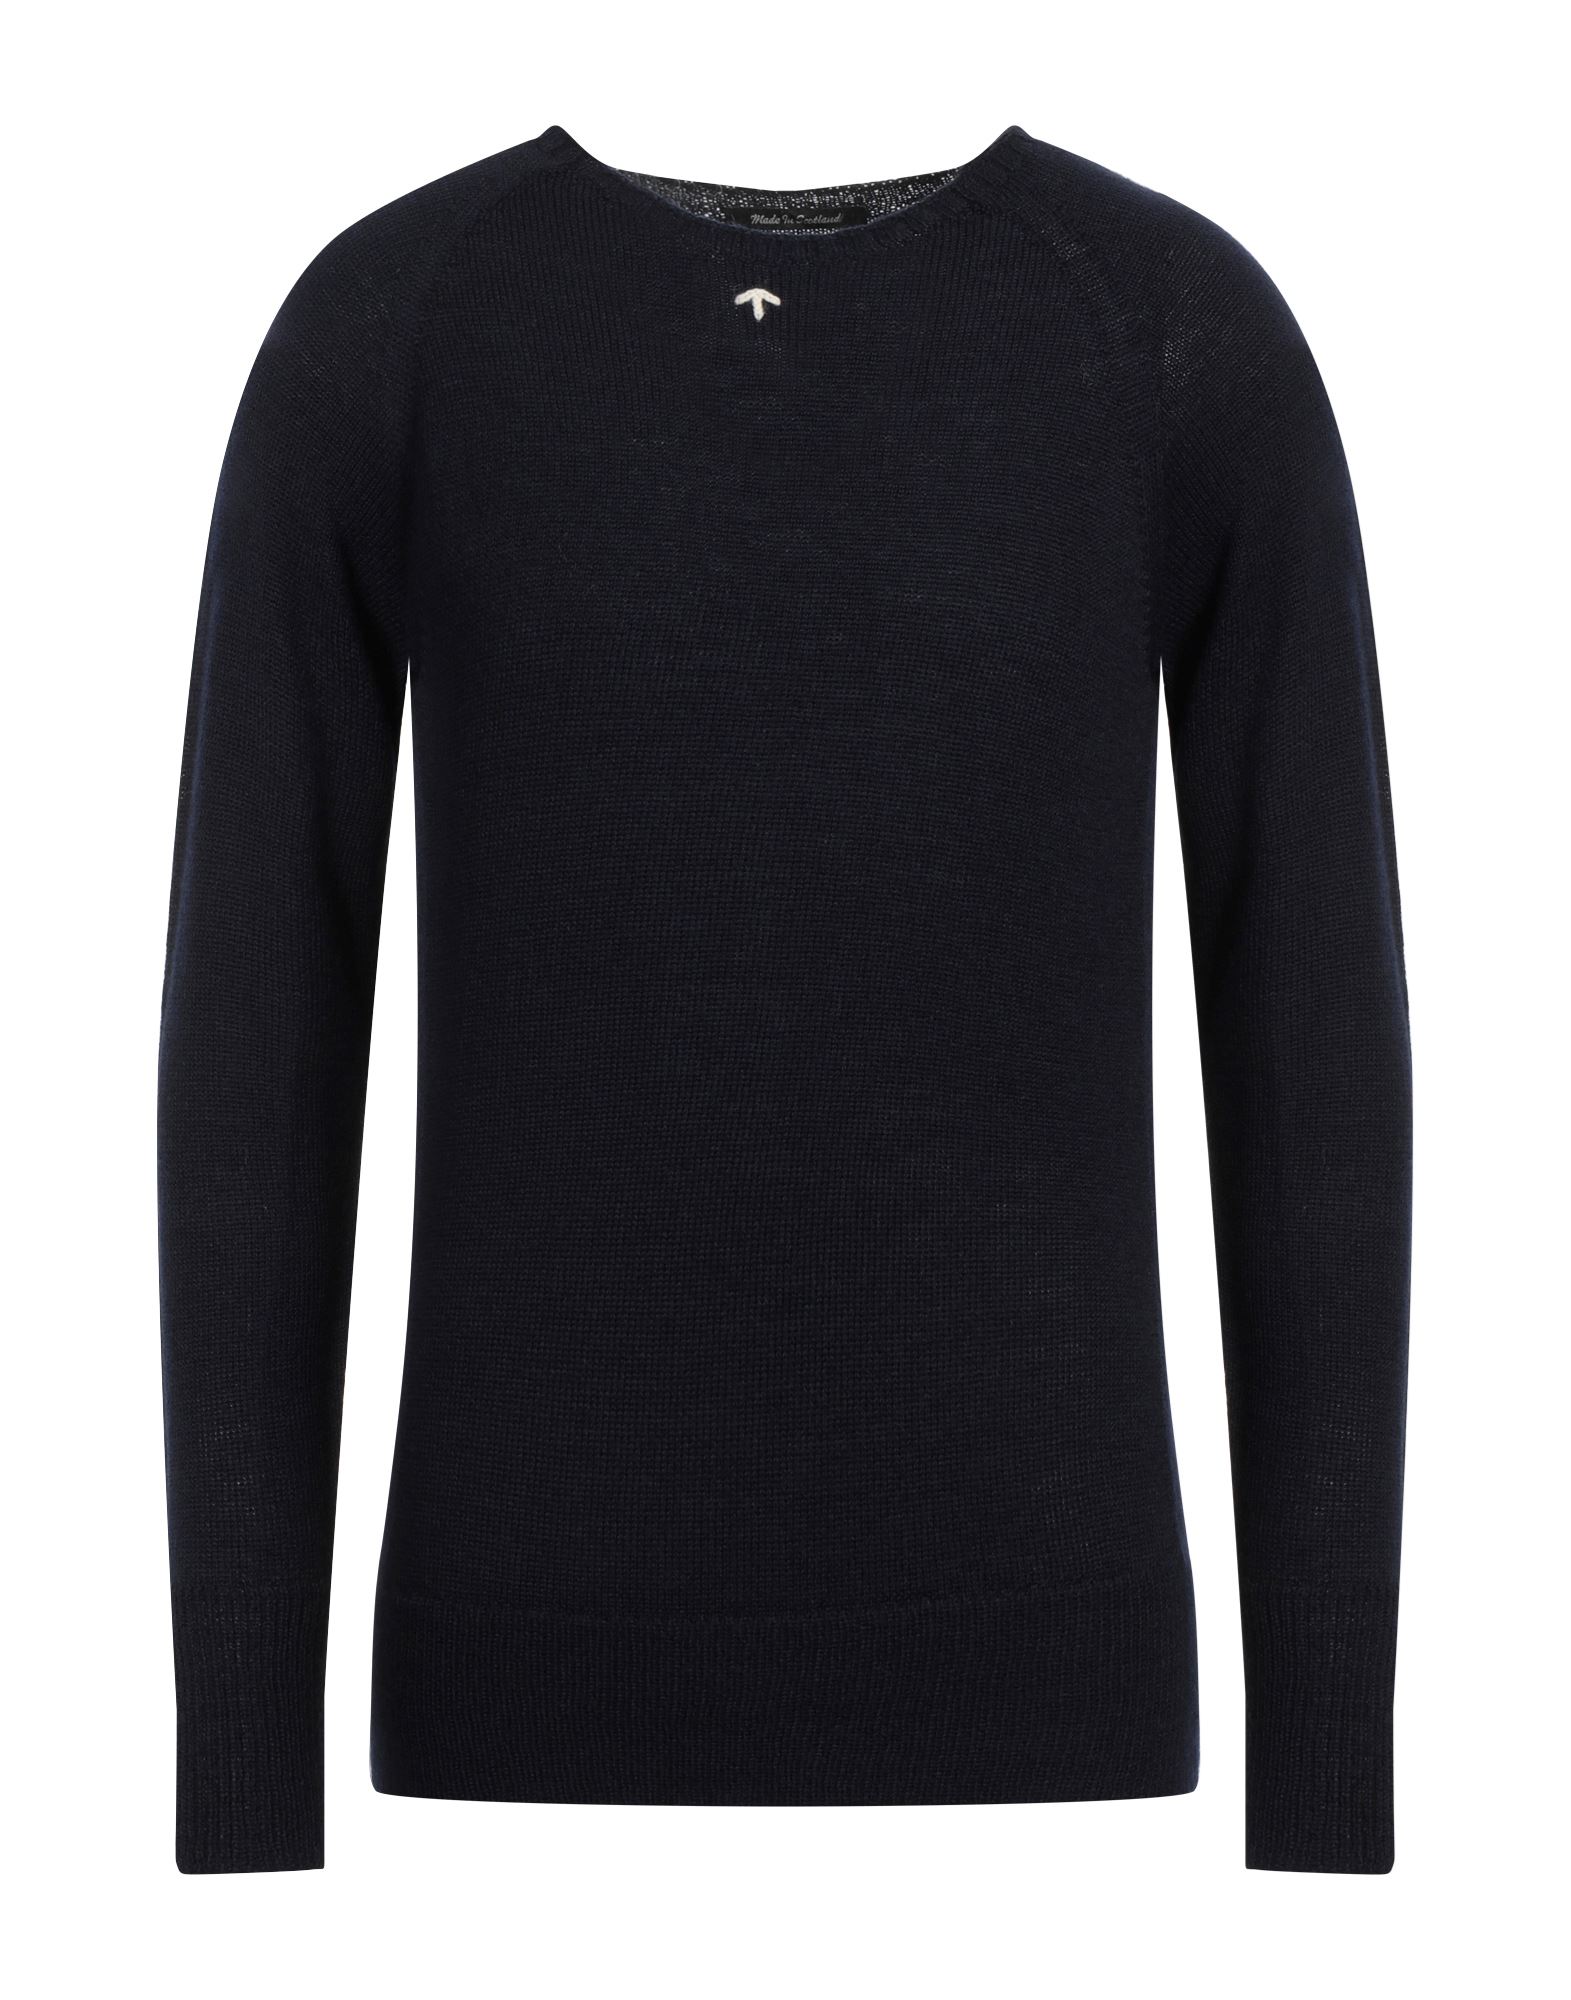 Nigel Cabourn Sweaters In Black